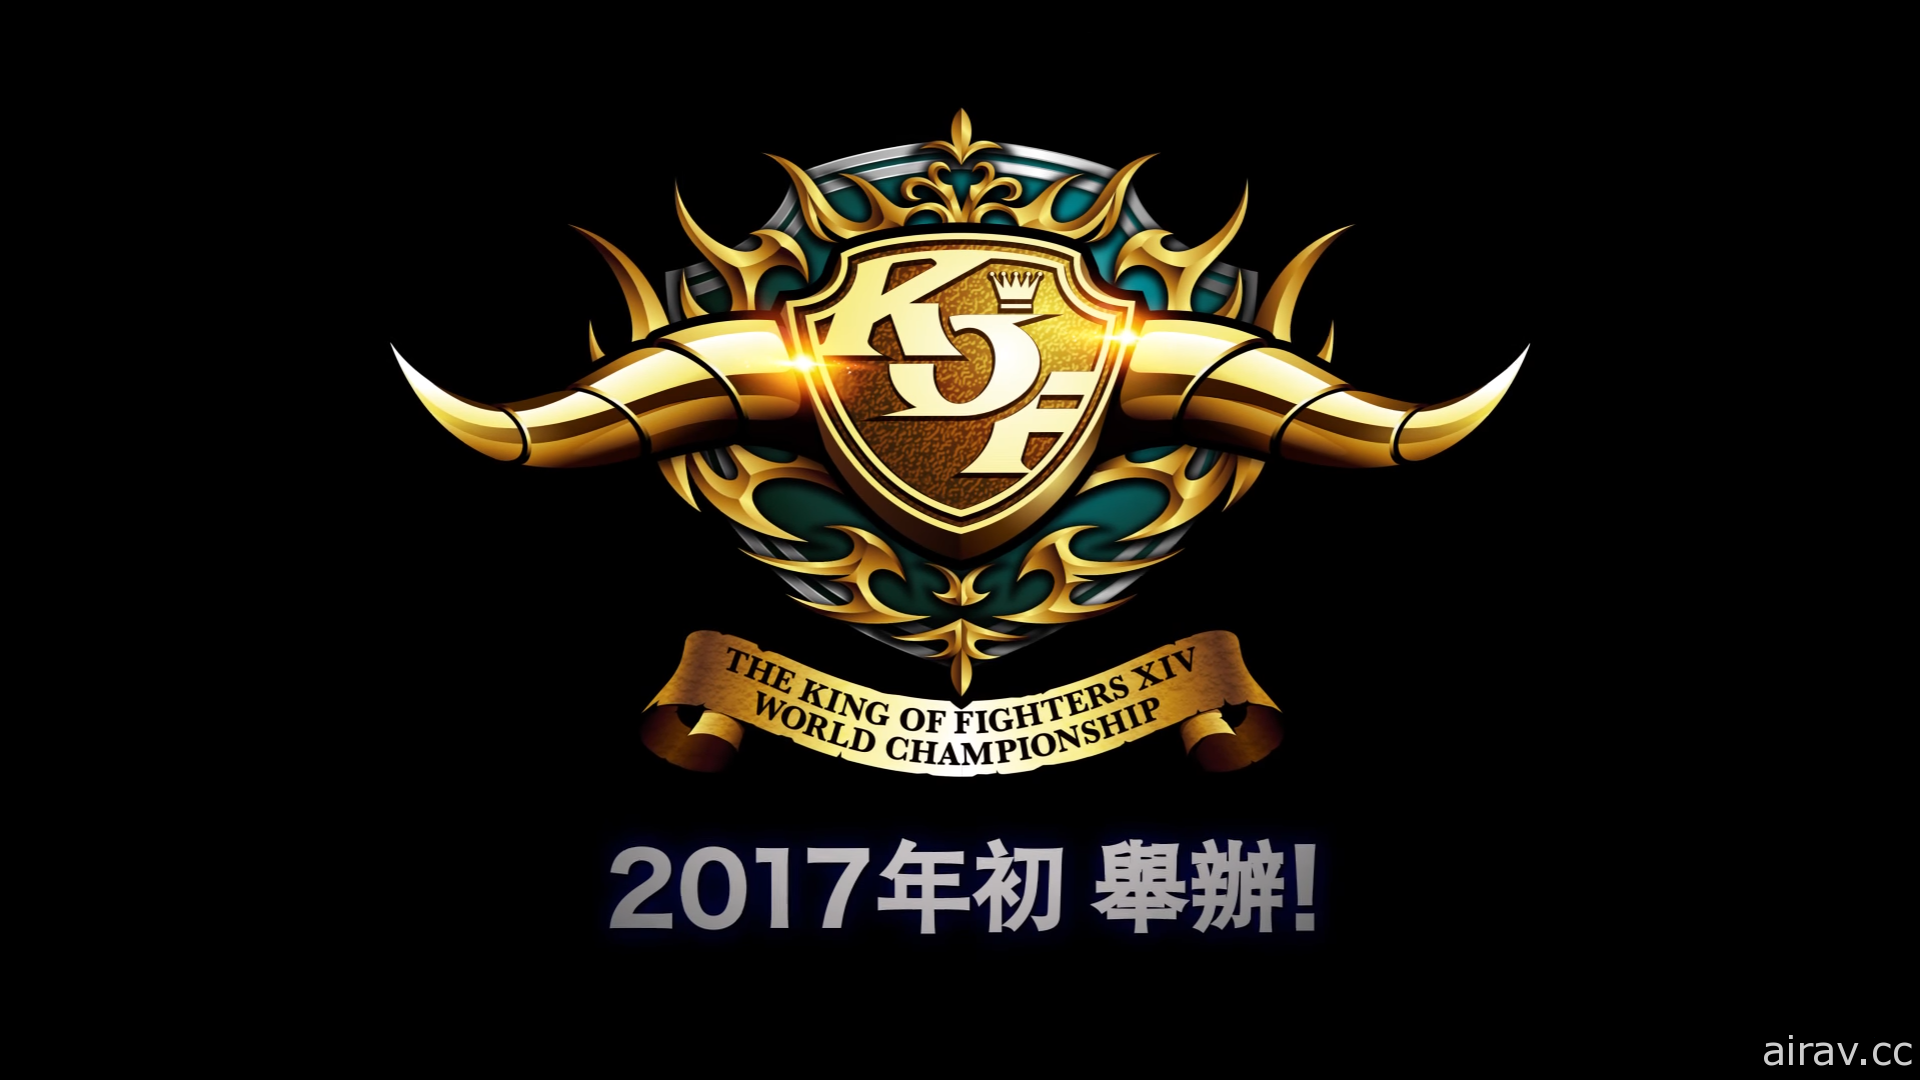 《拳皇 XIV》“KOF XIV WORLD CHAMPIONSHIP”台湾区预选赛报名开始 1 月